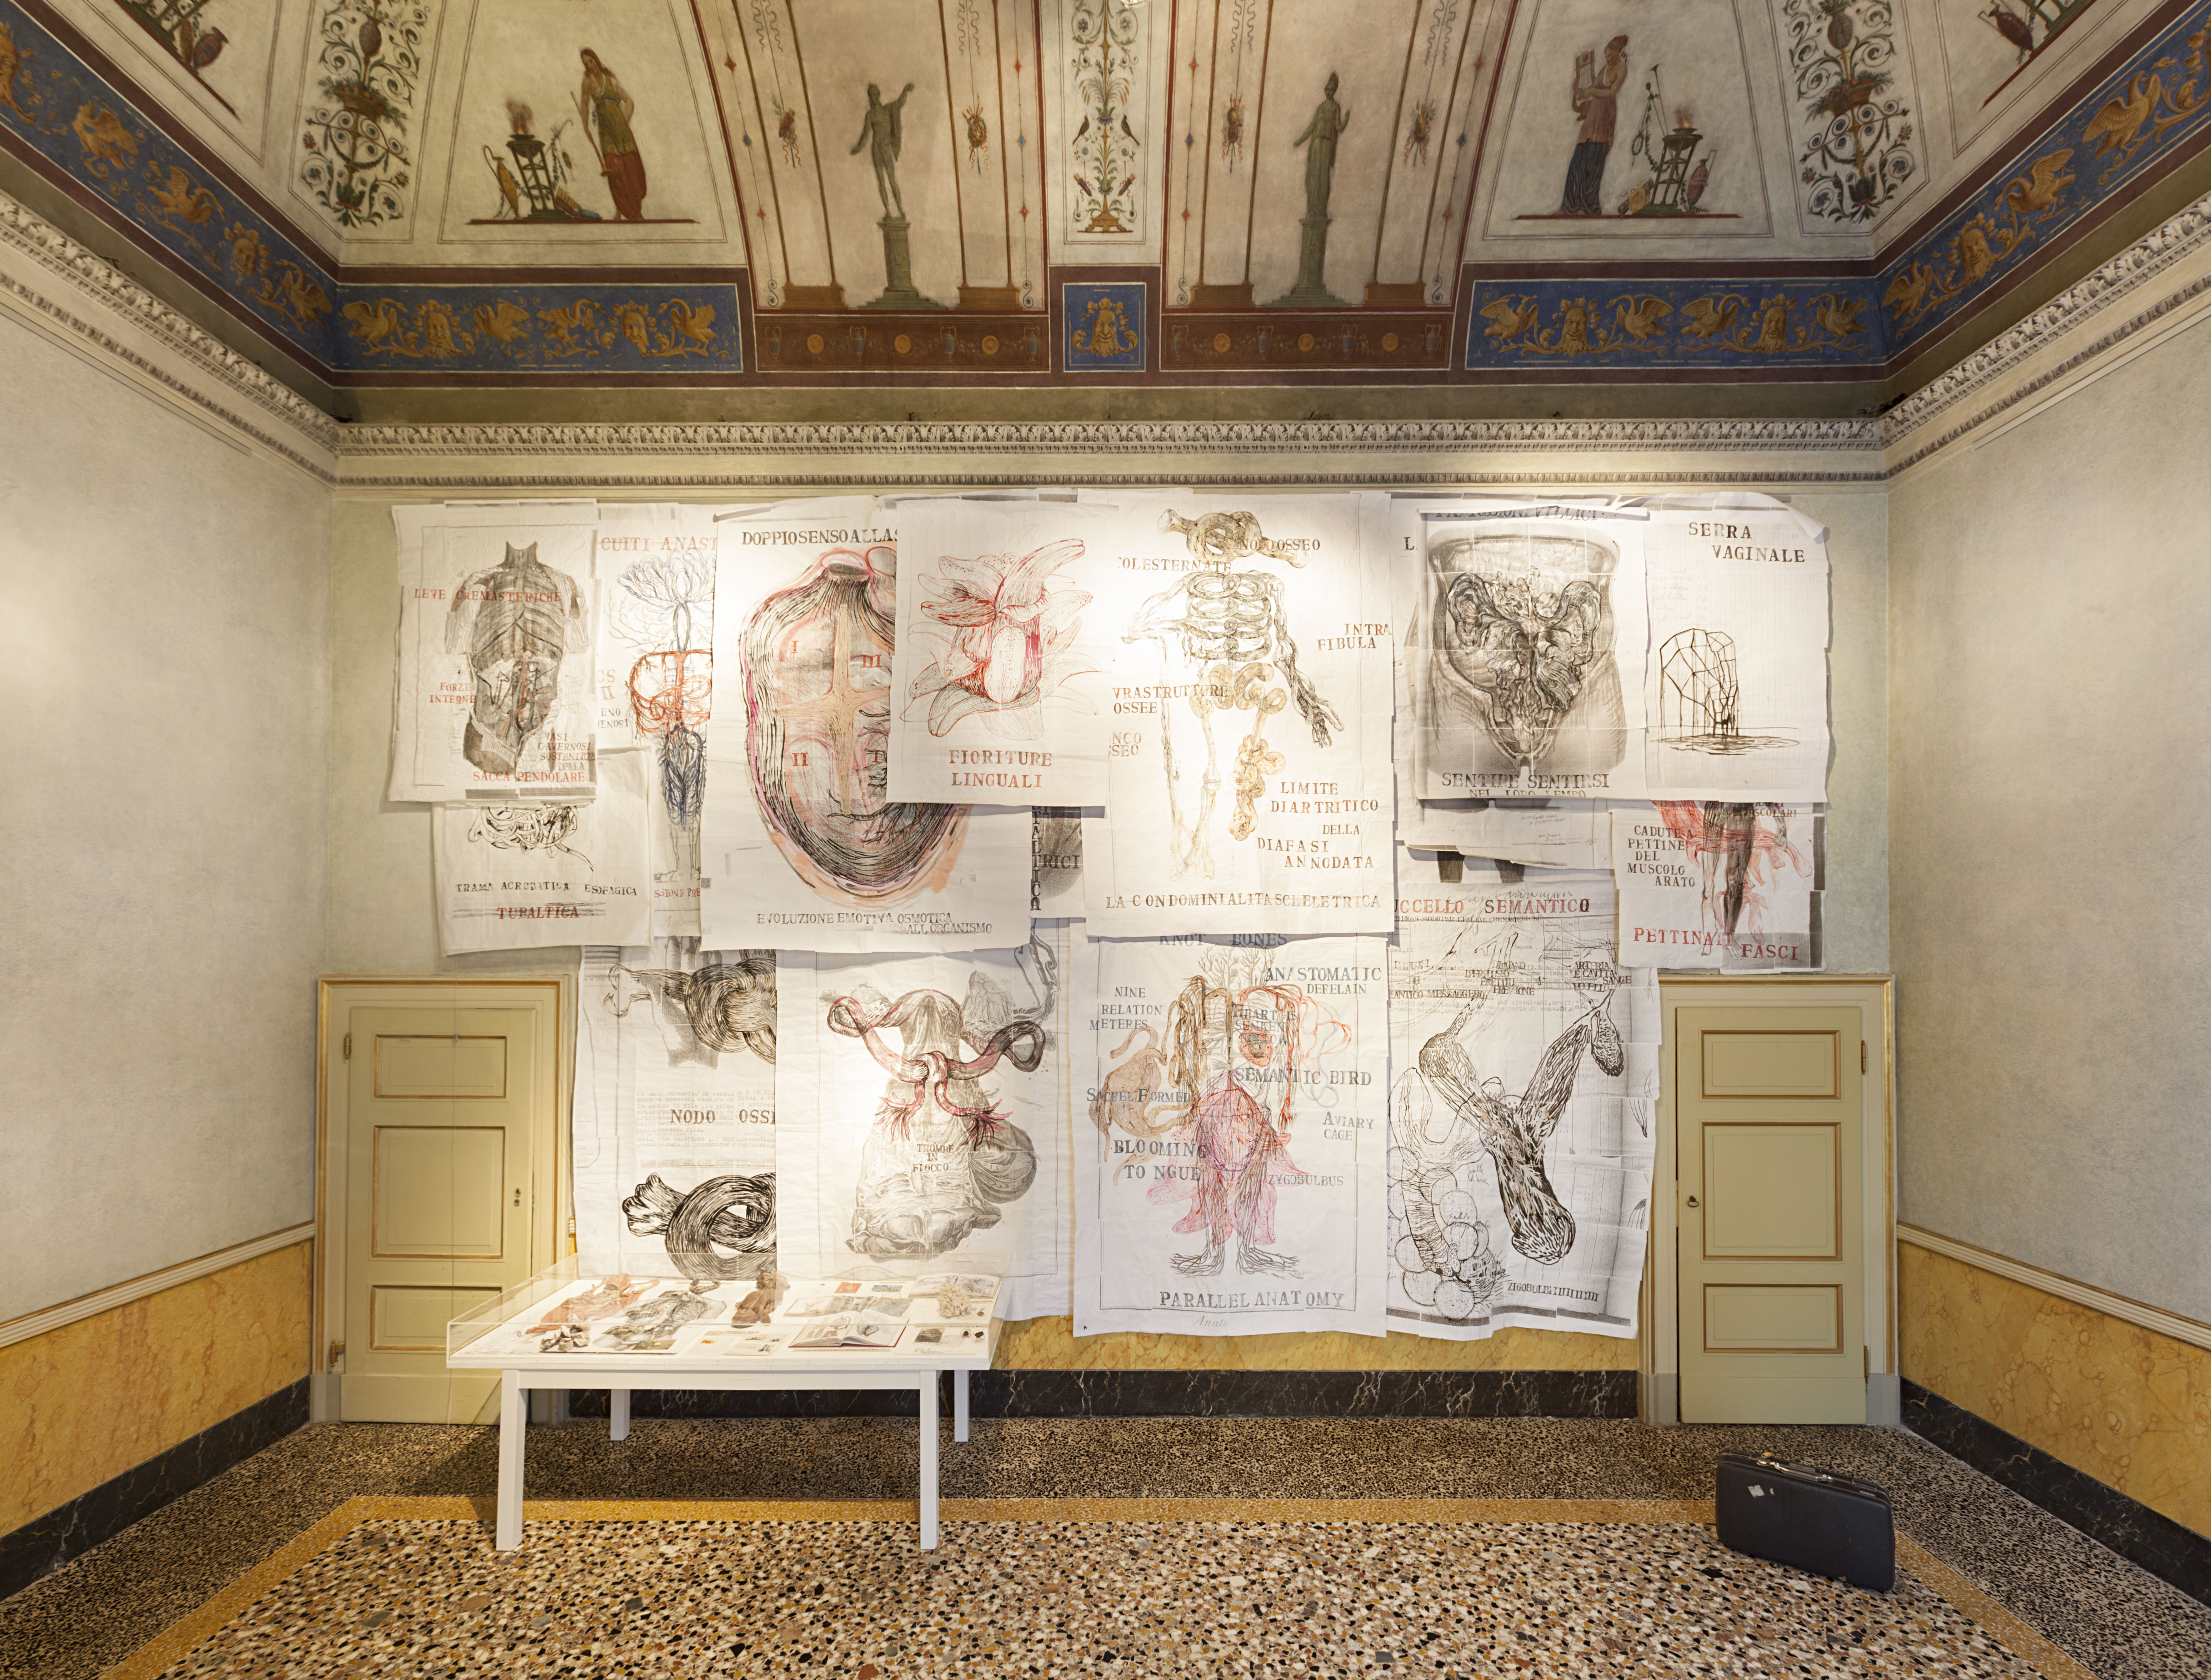 Sissi, VolumeInterno, 2012 l Sissi, Apparati di una ricerca anatomica, 1999-2015 l Lara Favaretto, Lost & Found, 2003